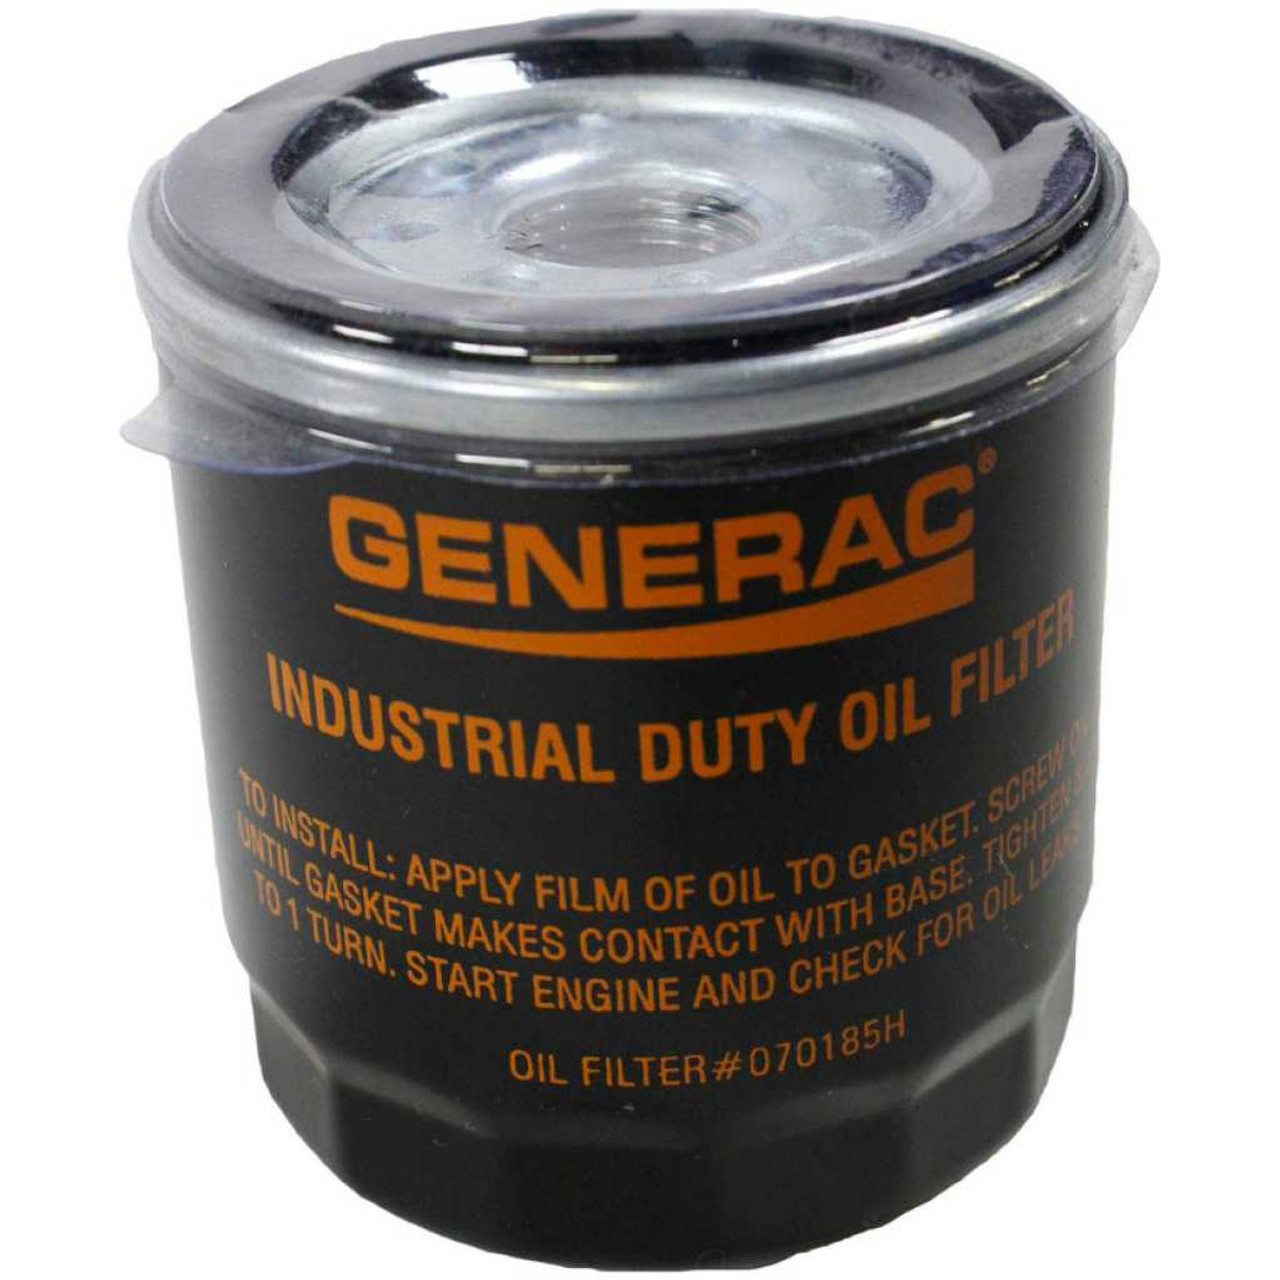 Generac 070185H Oil Filter for Generators